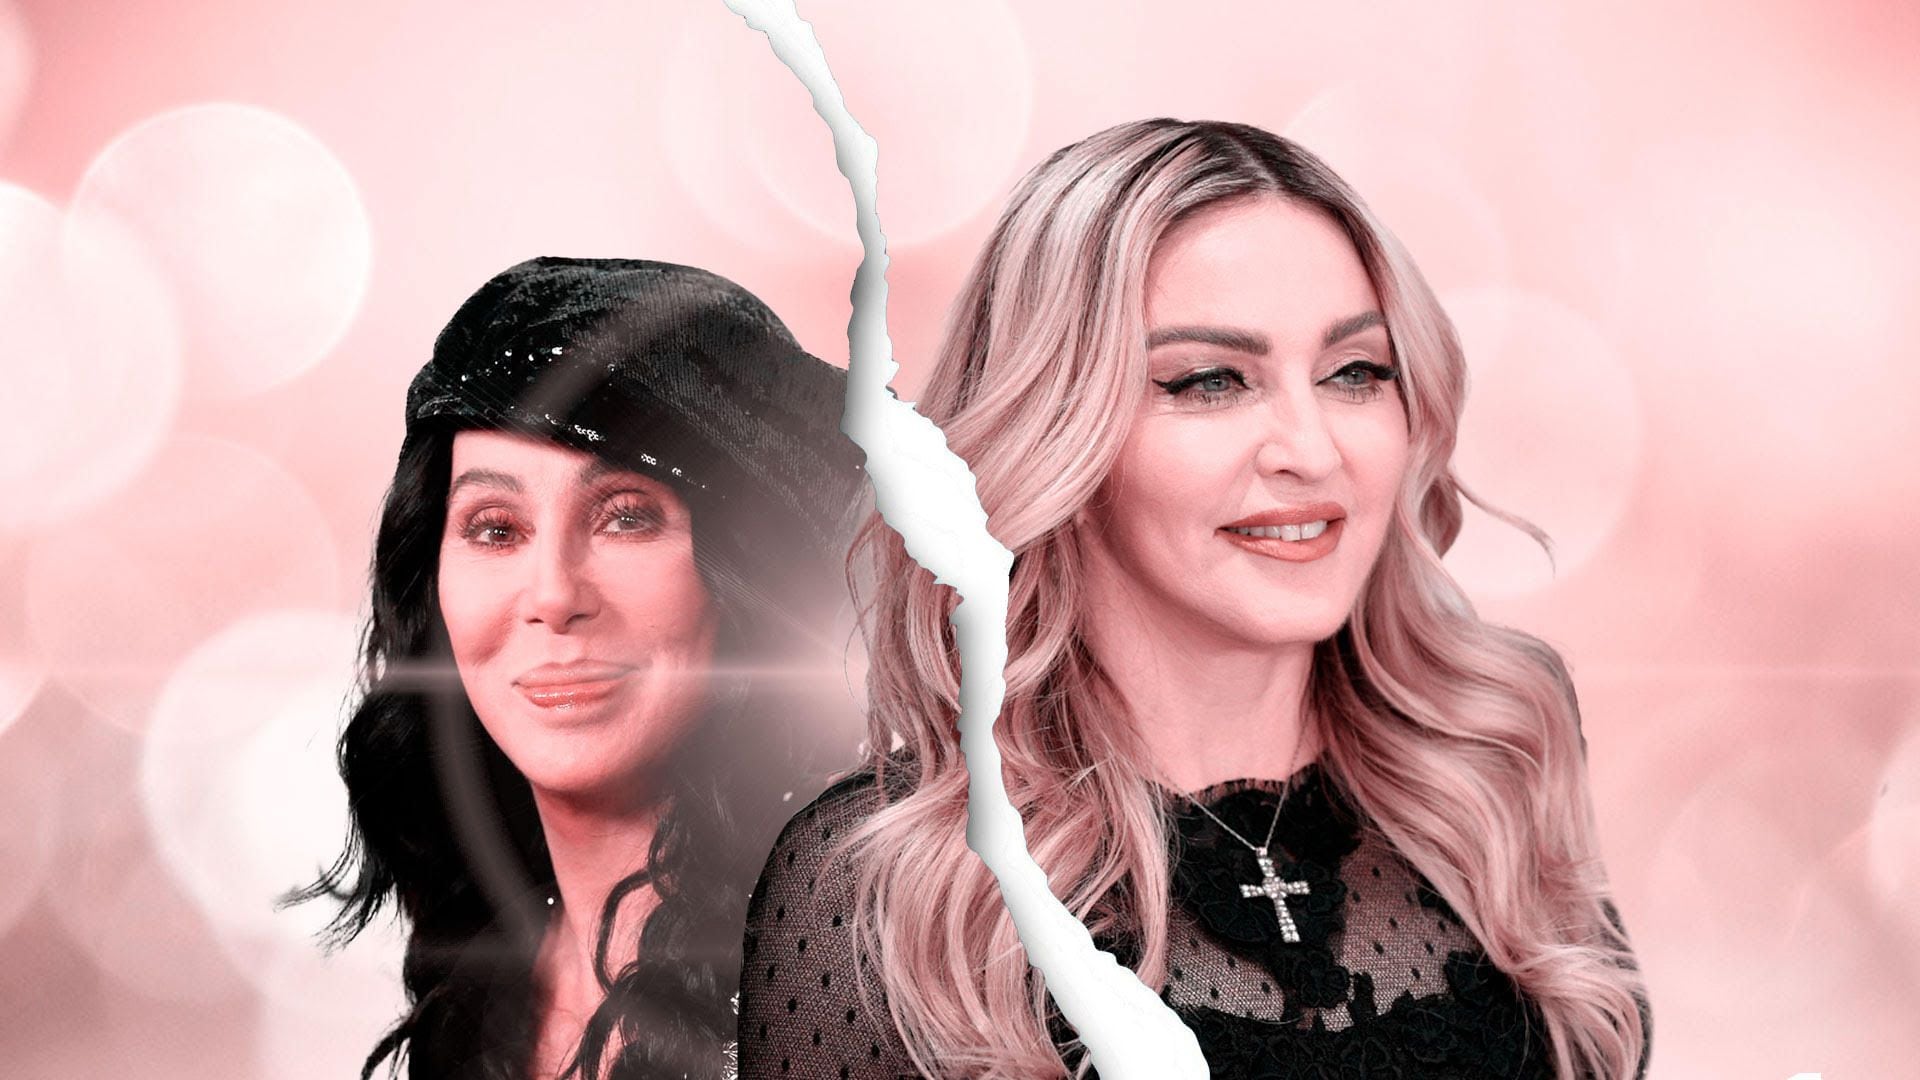 Las rencillas entre las divas del pop Cher y Madonna habrían llegado a su fin, según Cher (Infobae/Jovani Pérez)